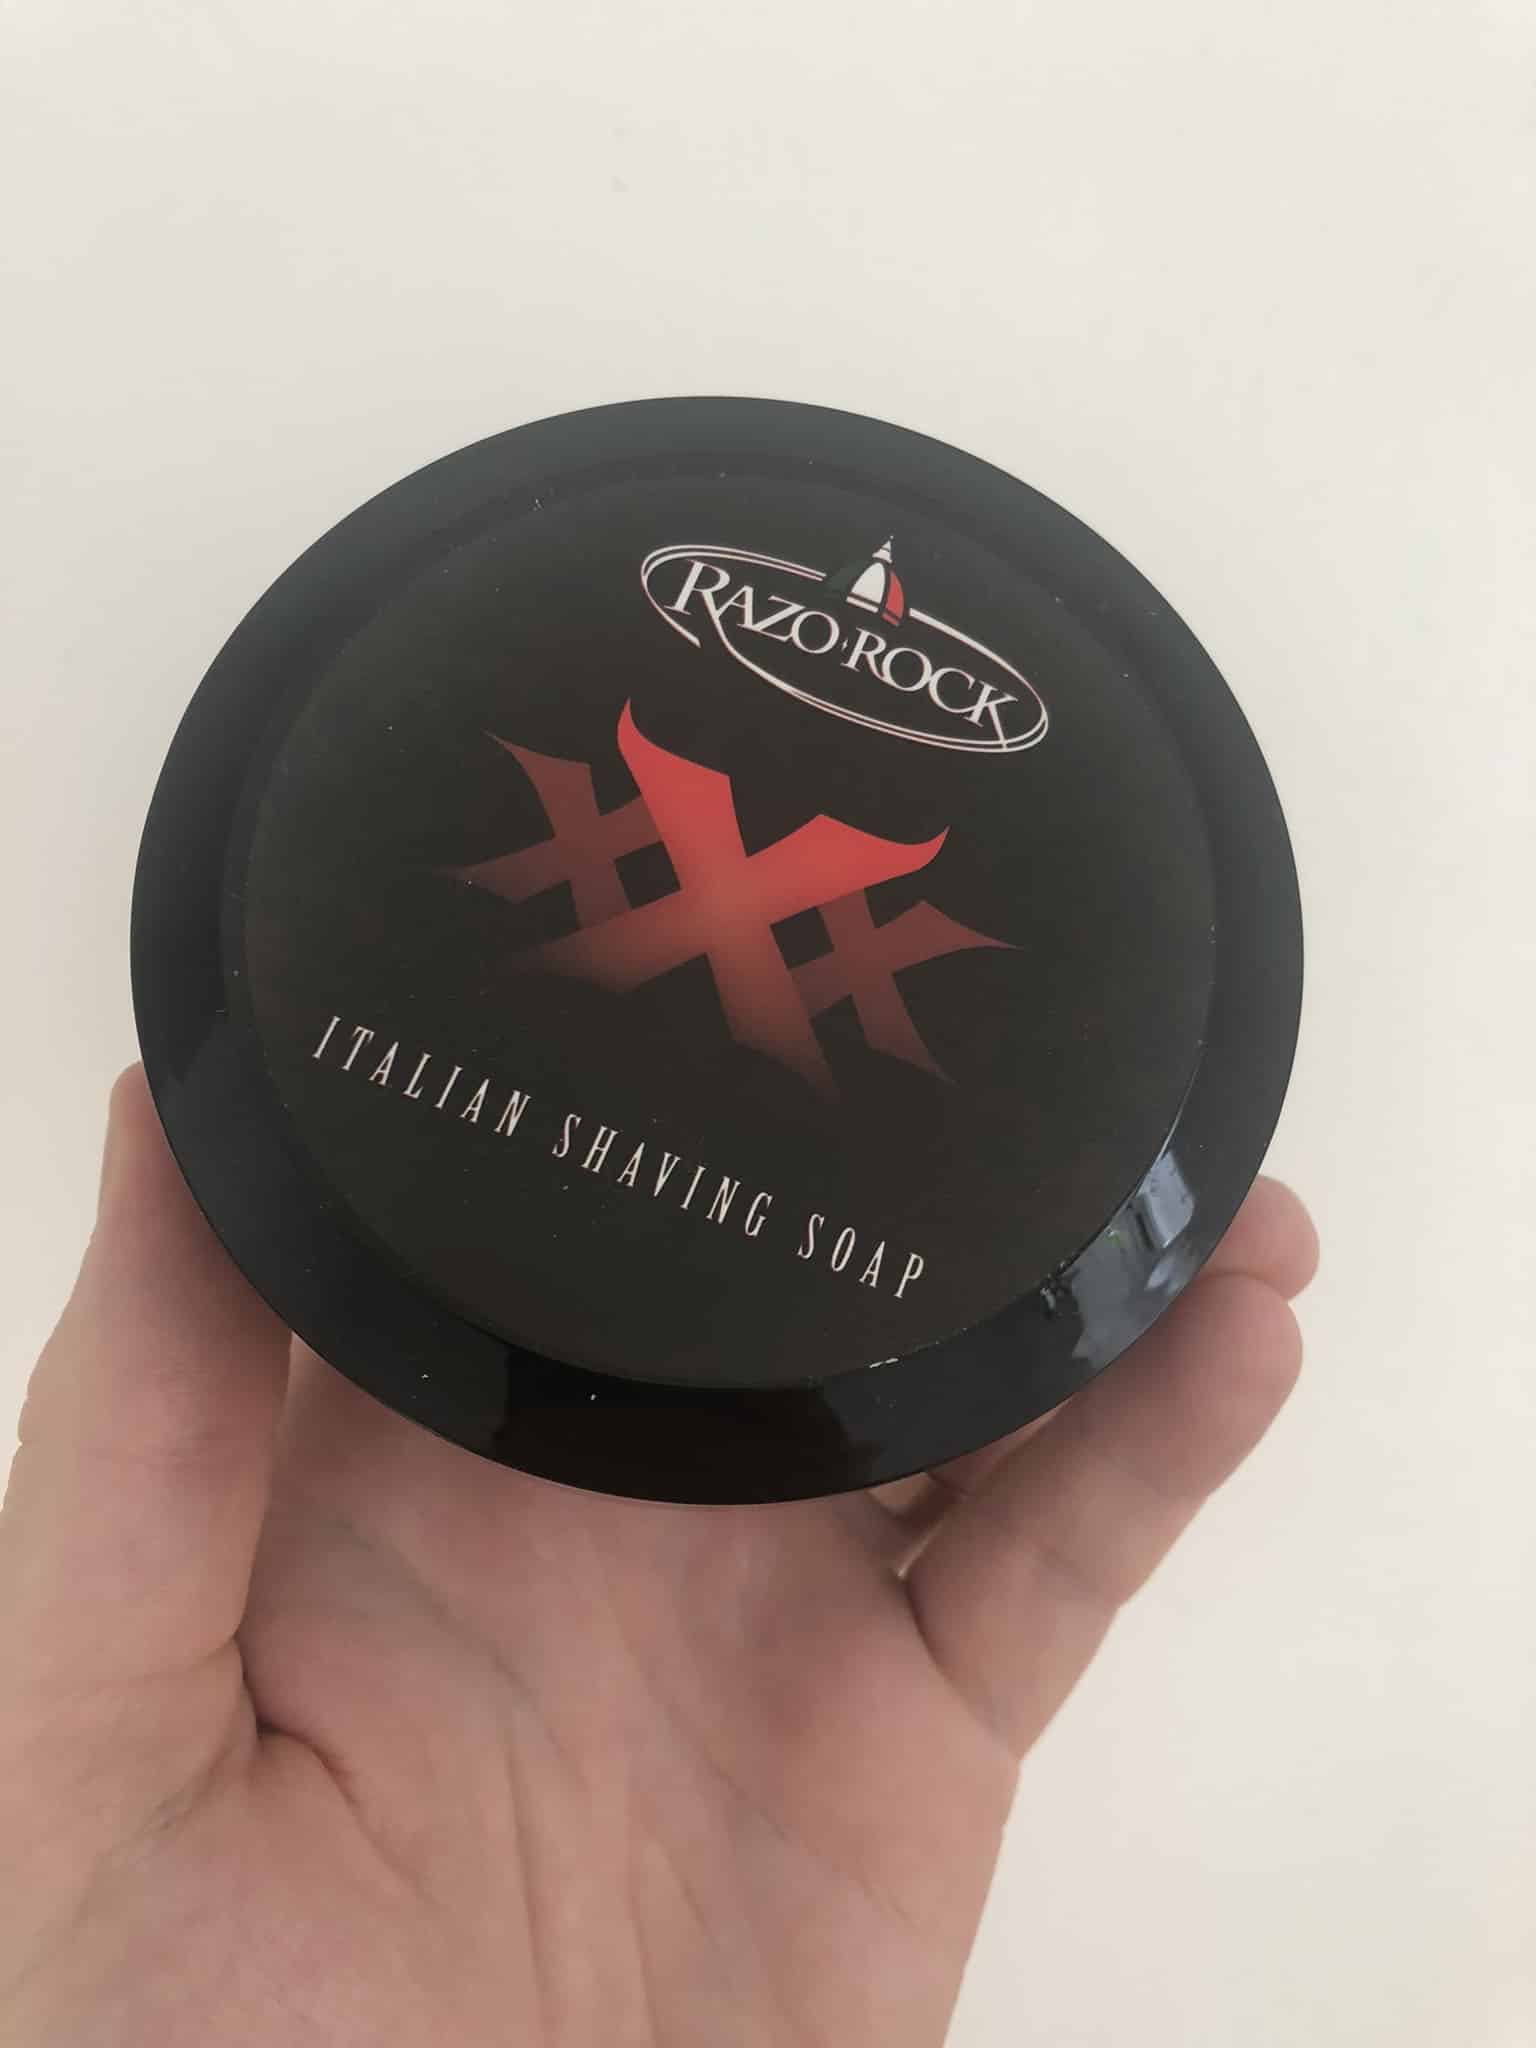 RazoRock Shaving Soap Review - Photo of The Tub